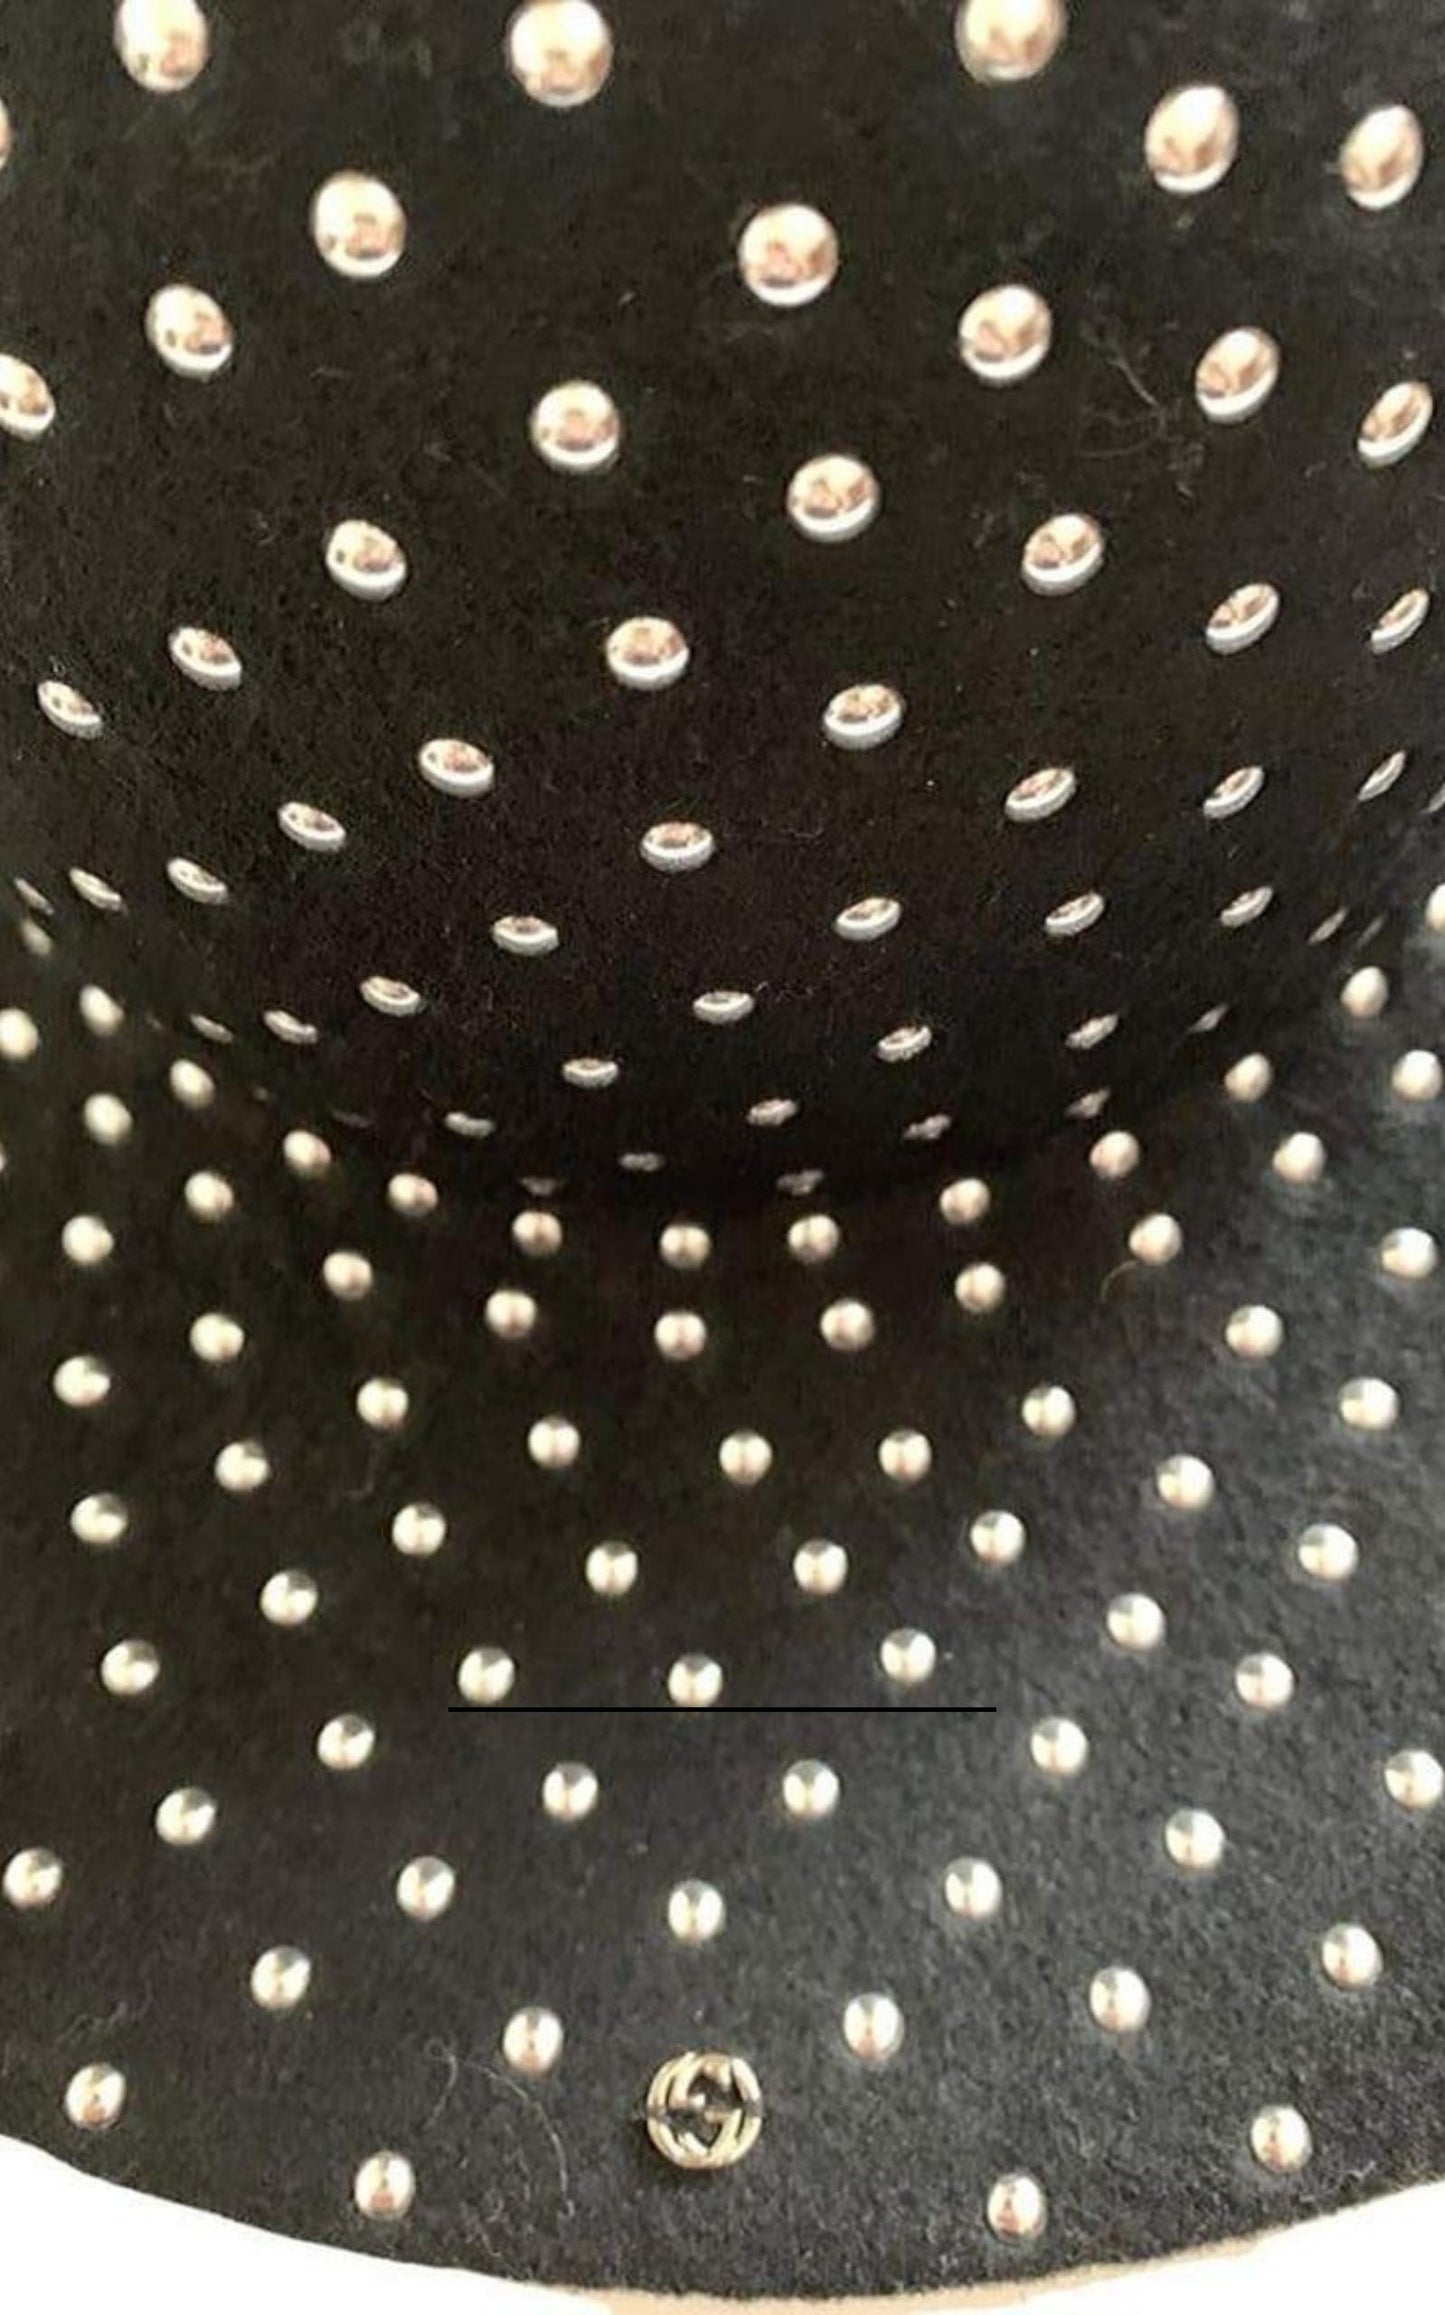  GucciStudded Wool-felt Wide Brim Hat - Runway Catalog